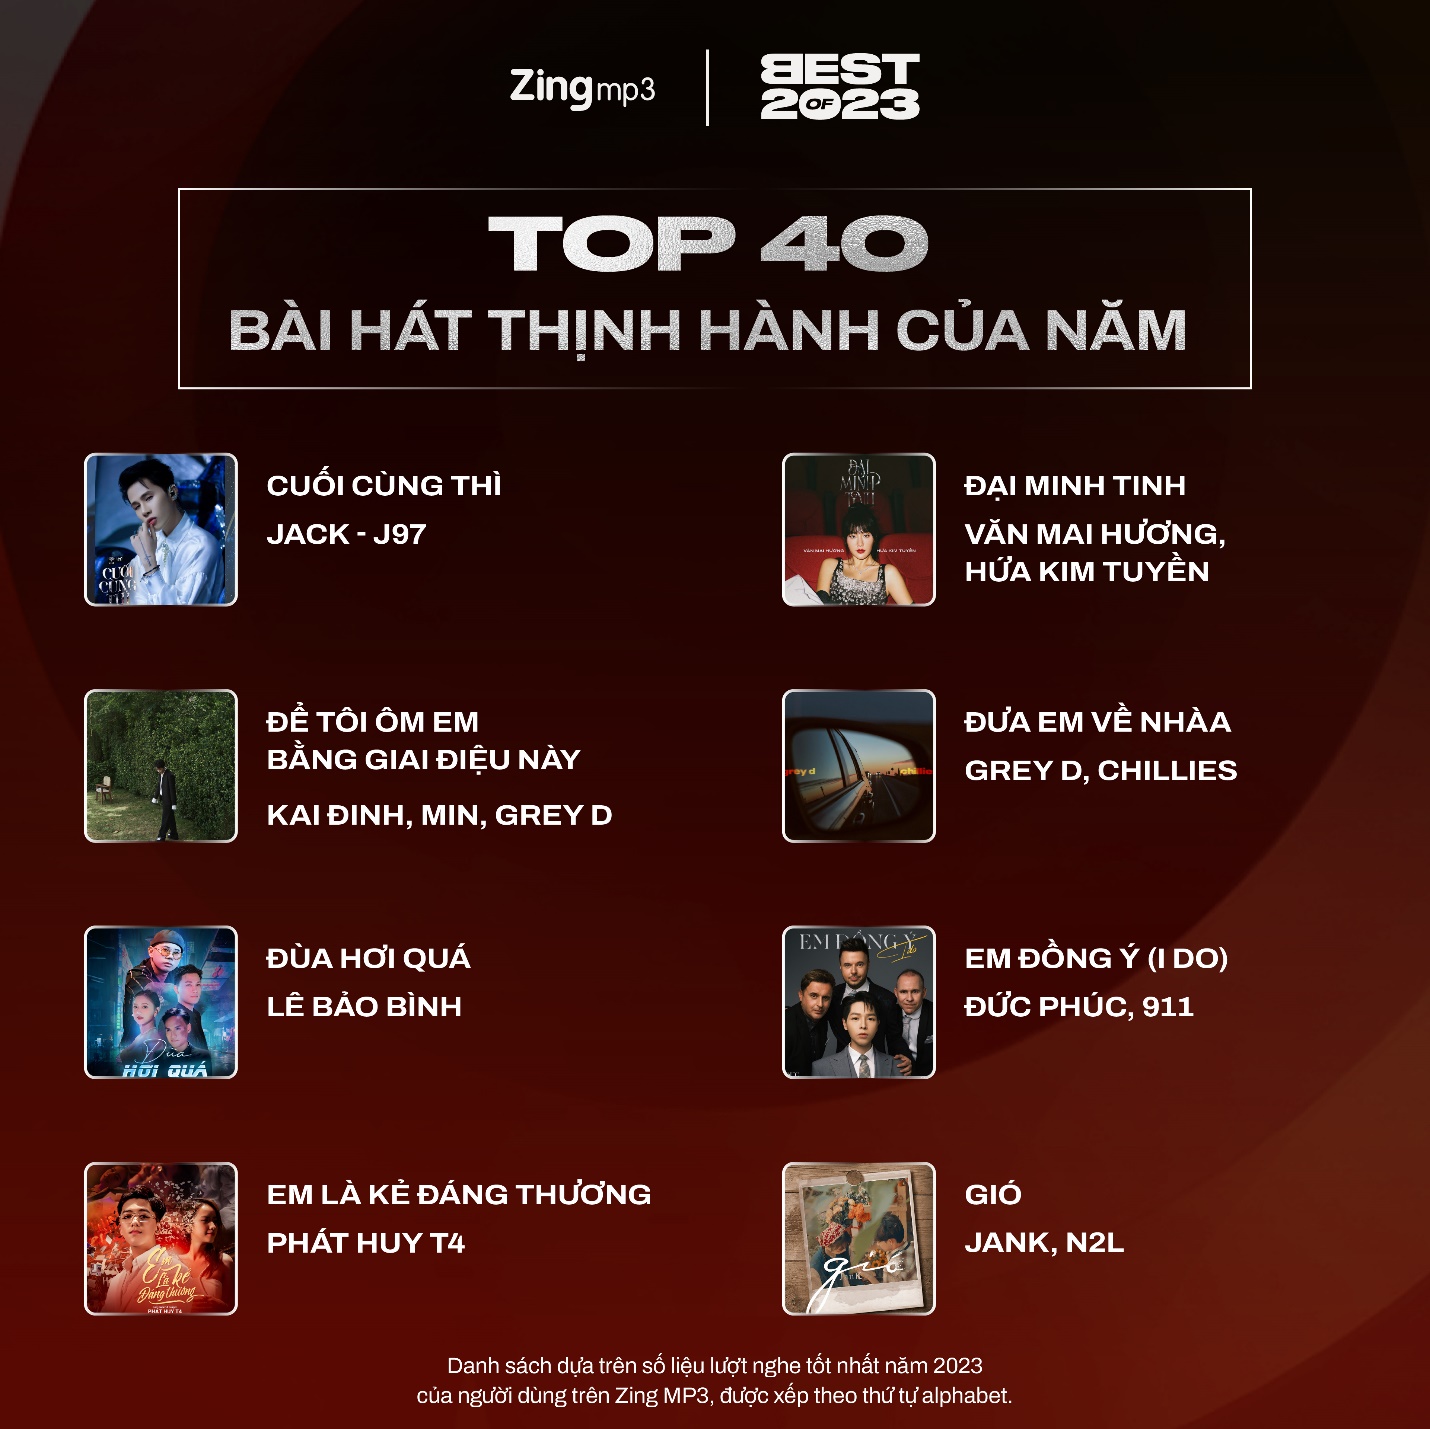 Top 40 nghệ sĩ và bài hát thịnh hành nhất Vpop năm 2023: Tăng Duy Tân lập cú đúp - Ảnh 8.